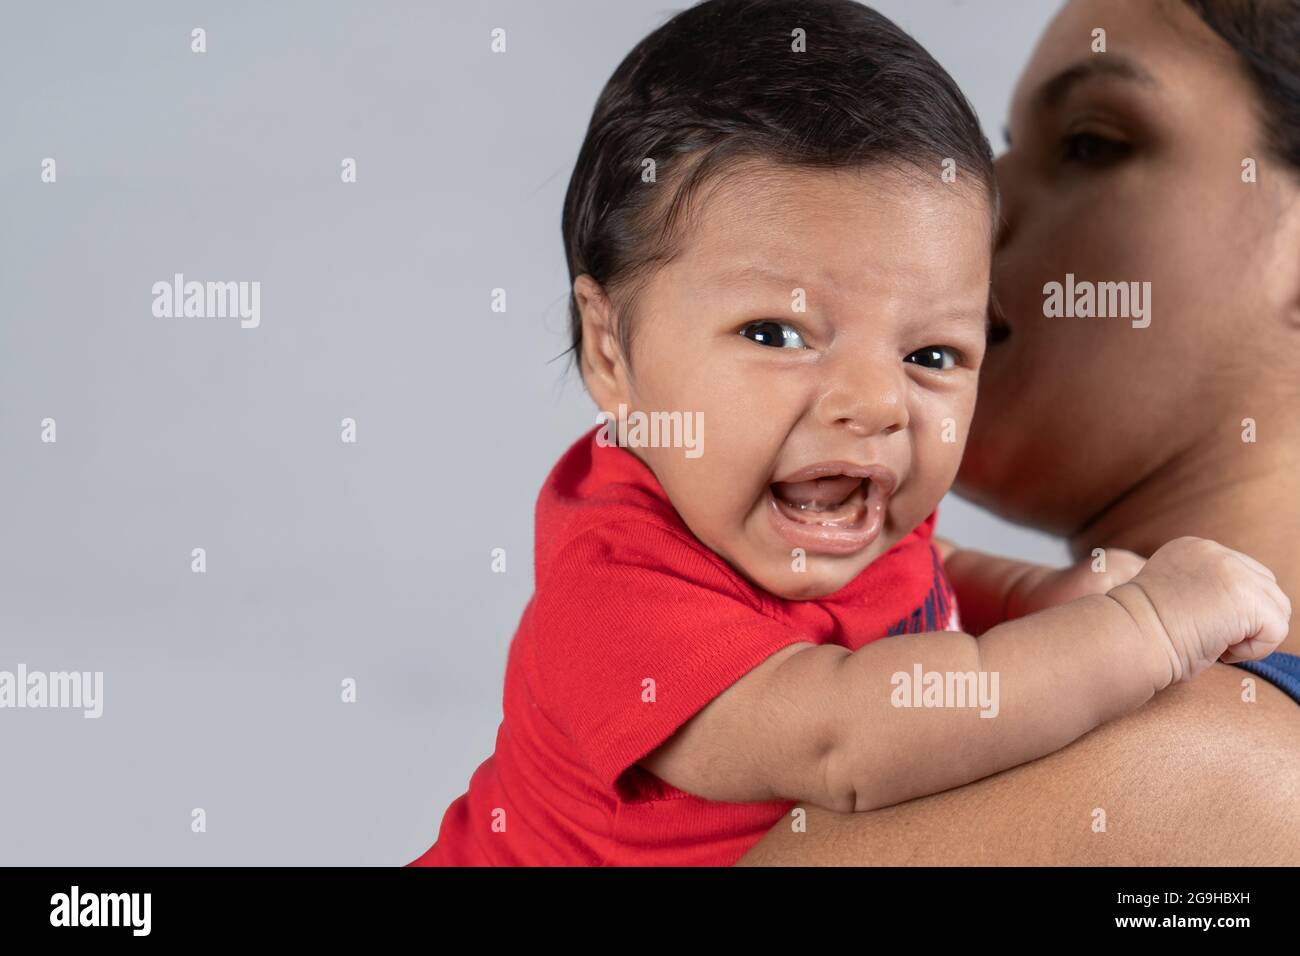 Bébé avec expression de pleurs, porté dans les mains d'une femme Banque D'Images